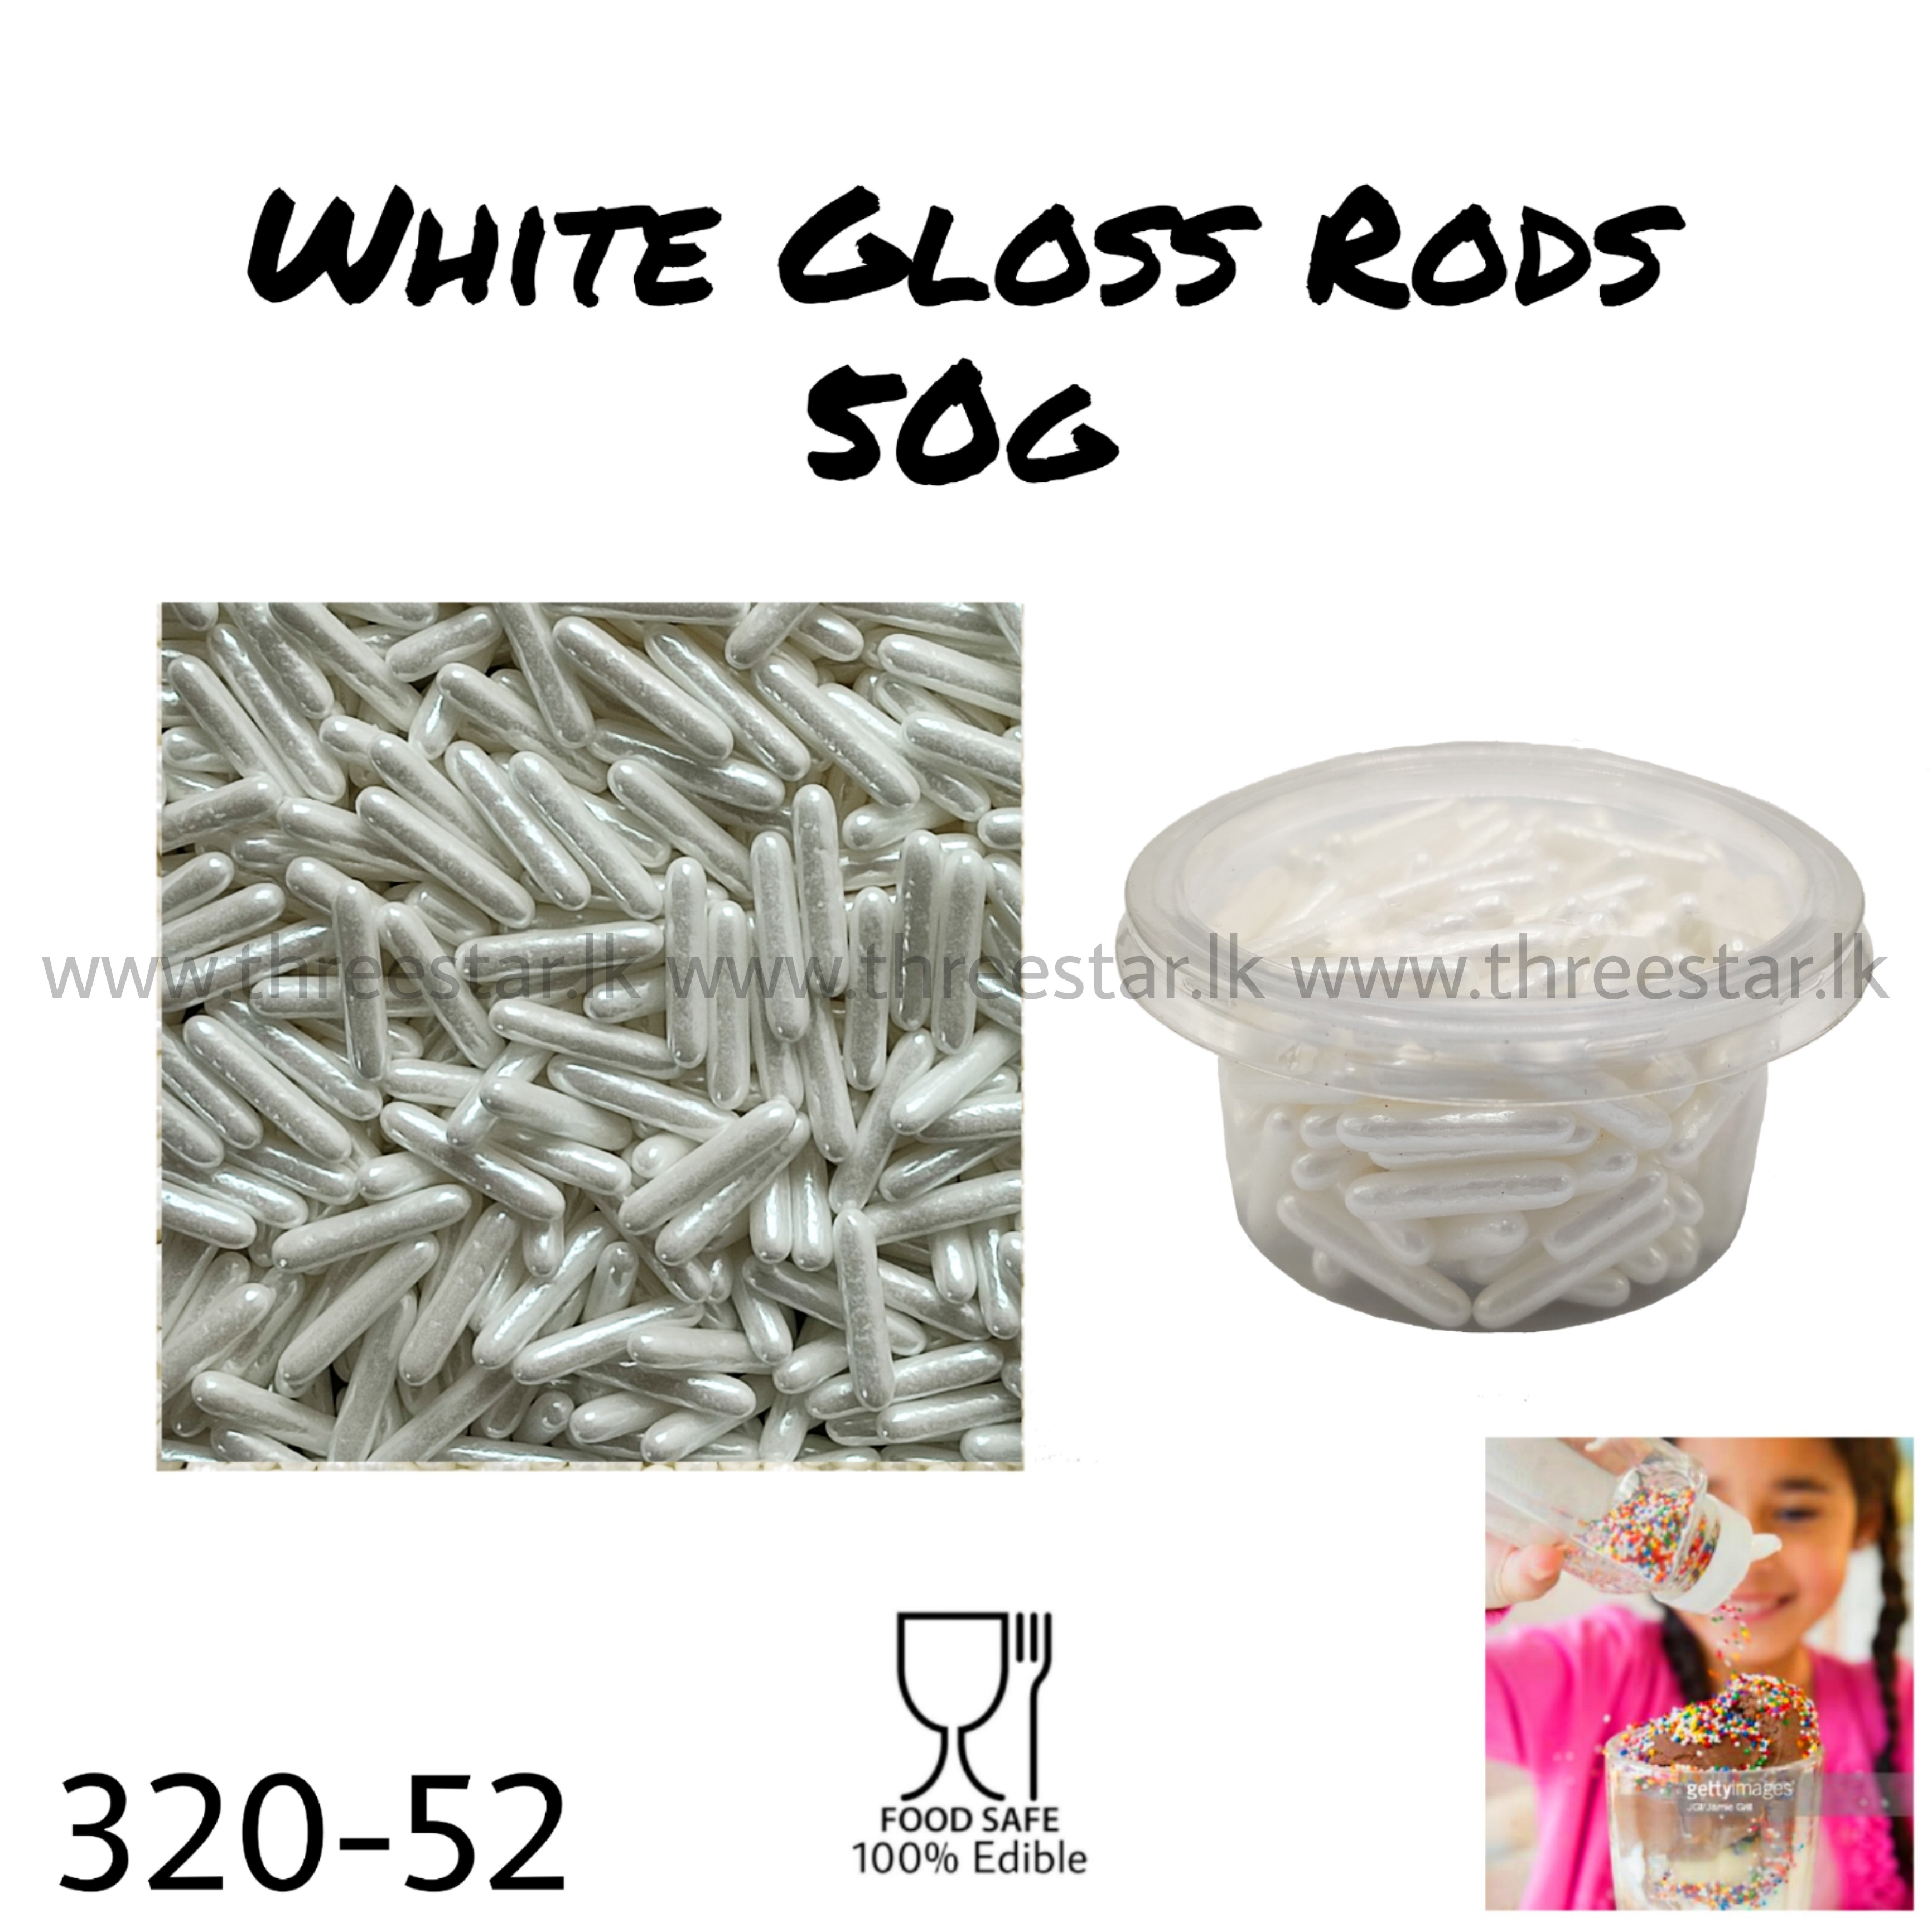 2cm White Gloss Rods 50g